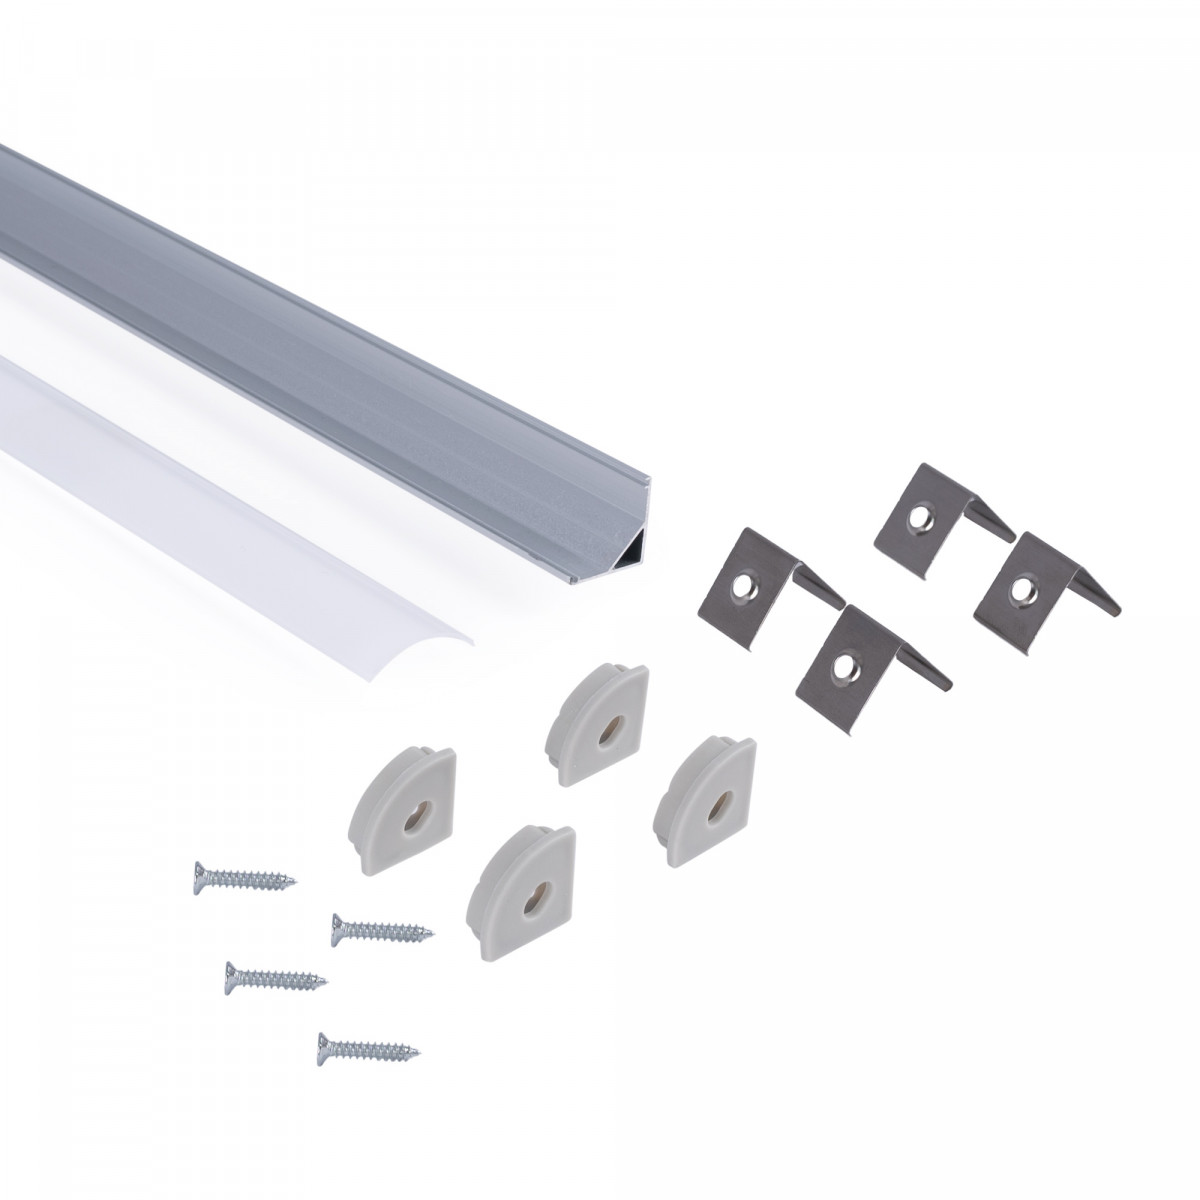 Alu Eckprofil mit Diffusor - Komplettset - 15,8x15,8mm - ≤10mm LED Streifen - 2 Meter - Montagezubehör LED Strip